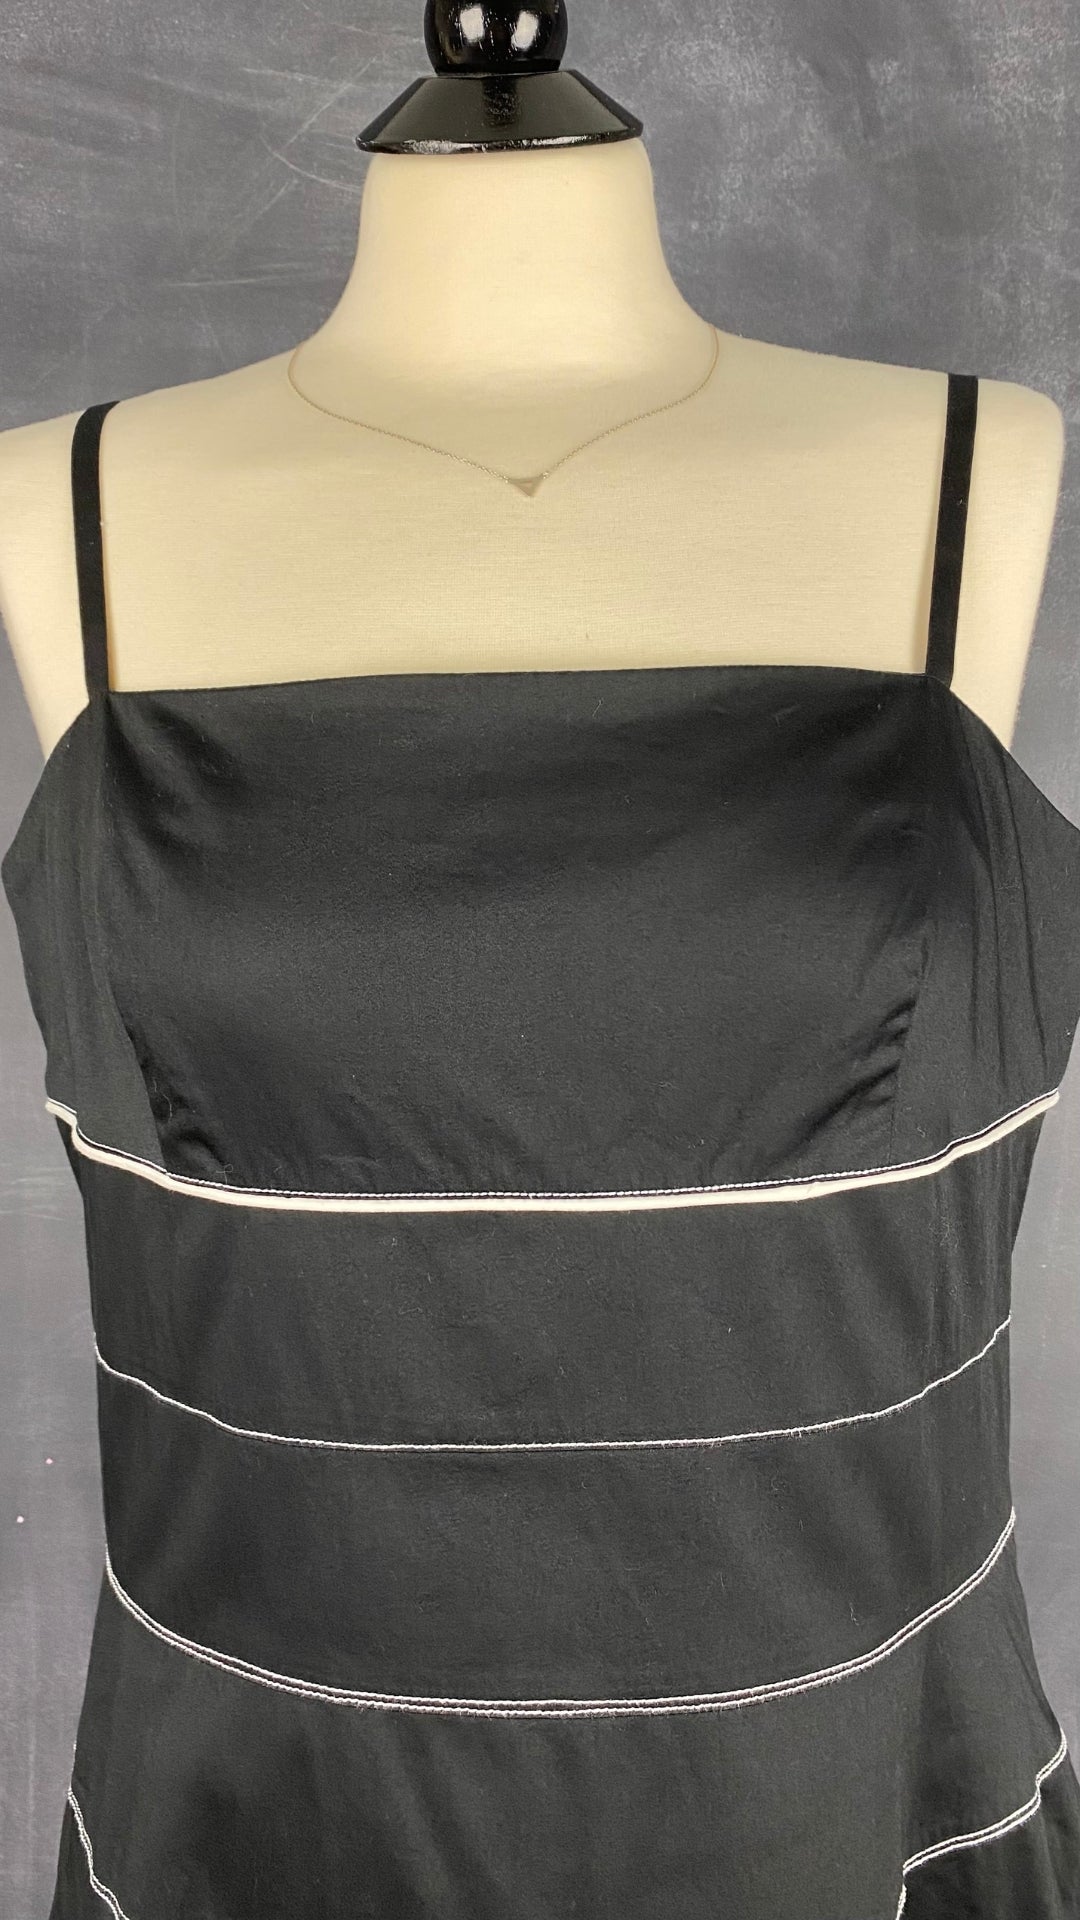 Robe noire à surpiqûres blanches 123 - Un deux trois, taille estimée à large. Vue de l'encolure, de face.